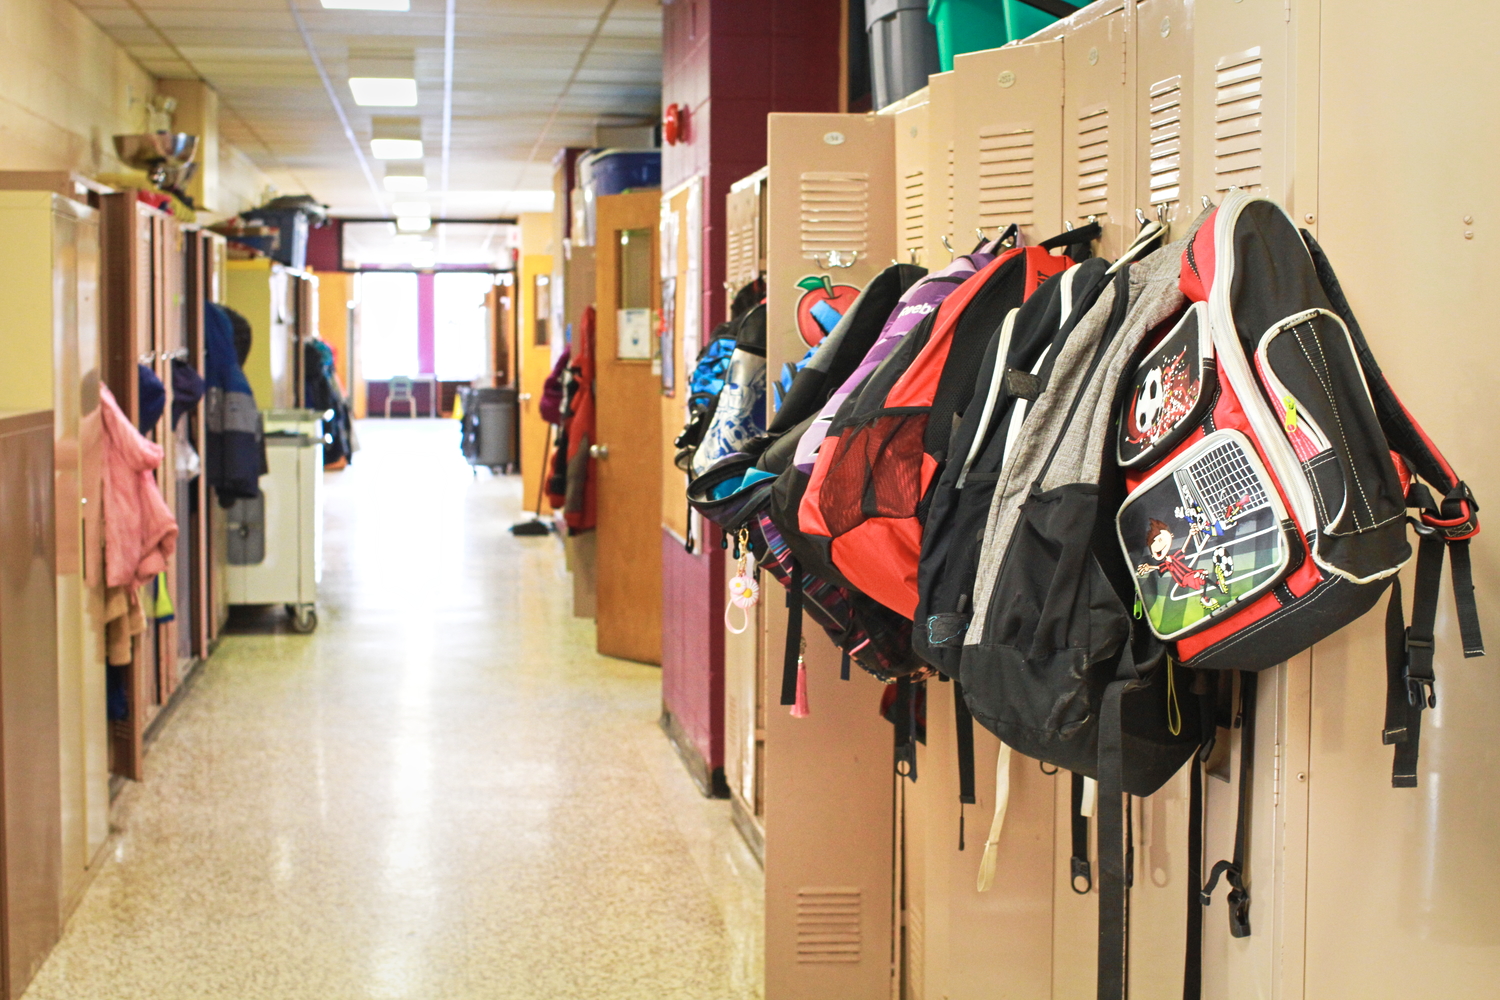 Un couloir de l’école avec les casiers des élèves © Globe Reporters